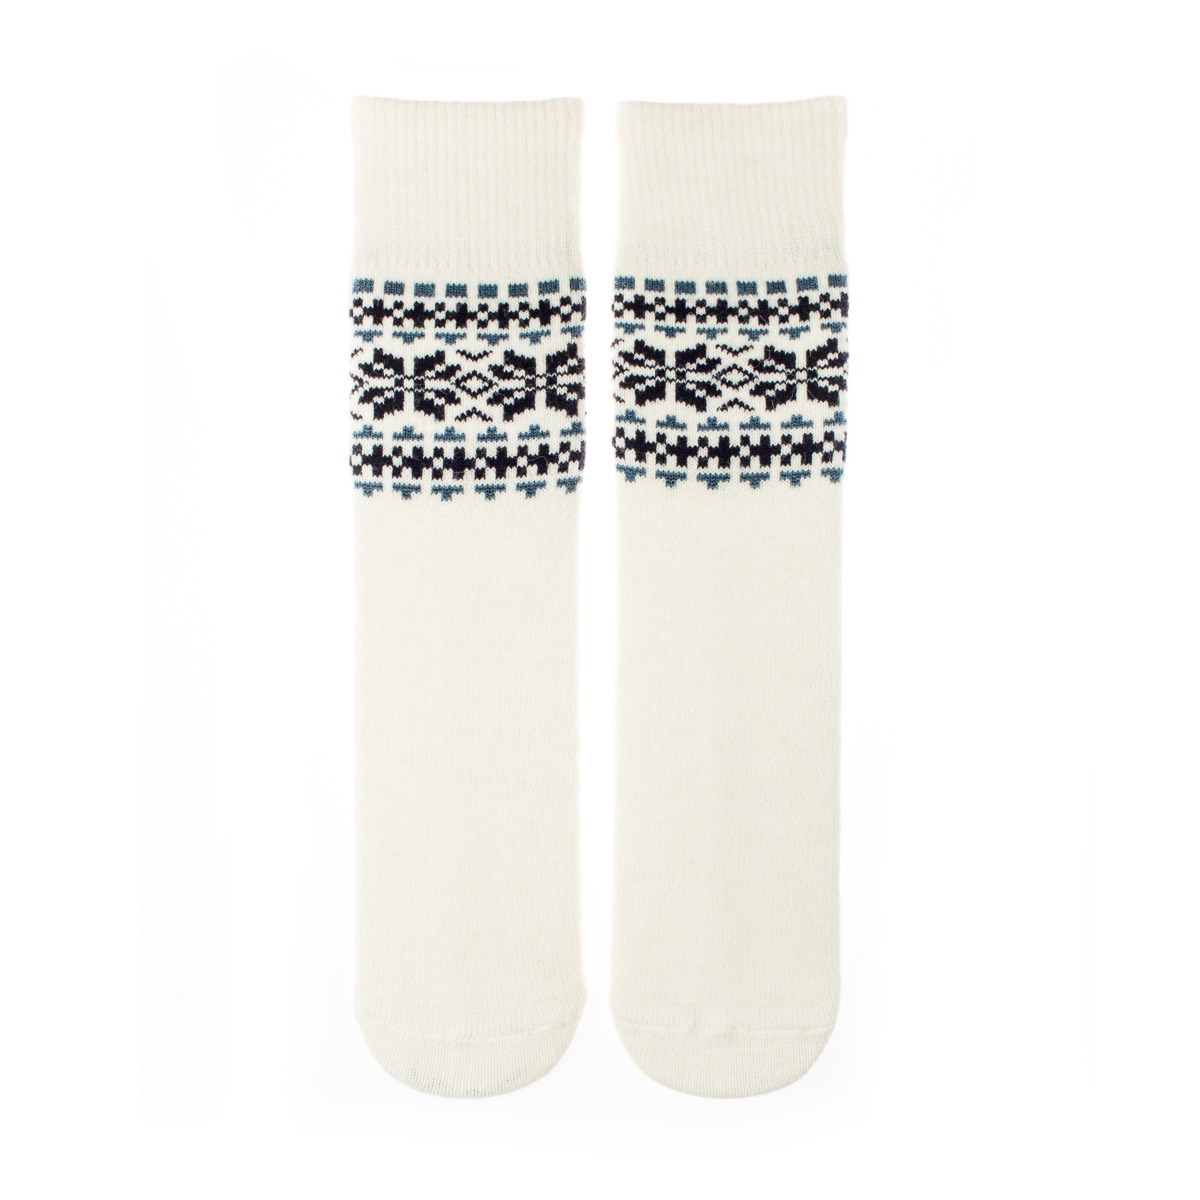 Vlnené ponožky Vlnáč Zima biely